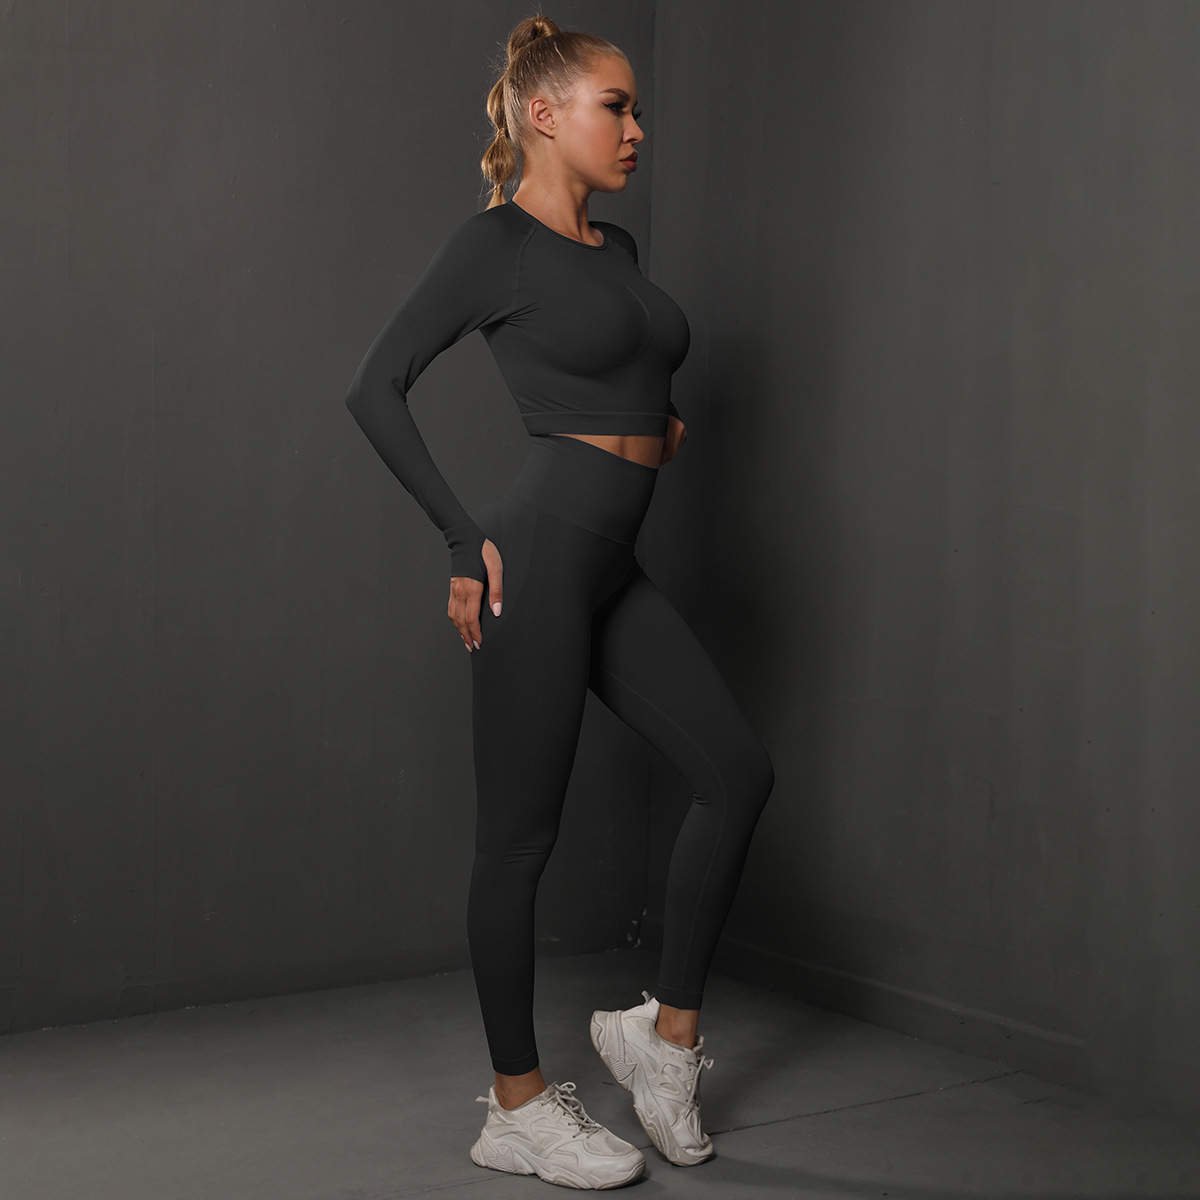 Sportchic - Sportoutfit - Set Vêtements de sport Femme - Squat proof -  Legging Fitness